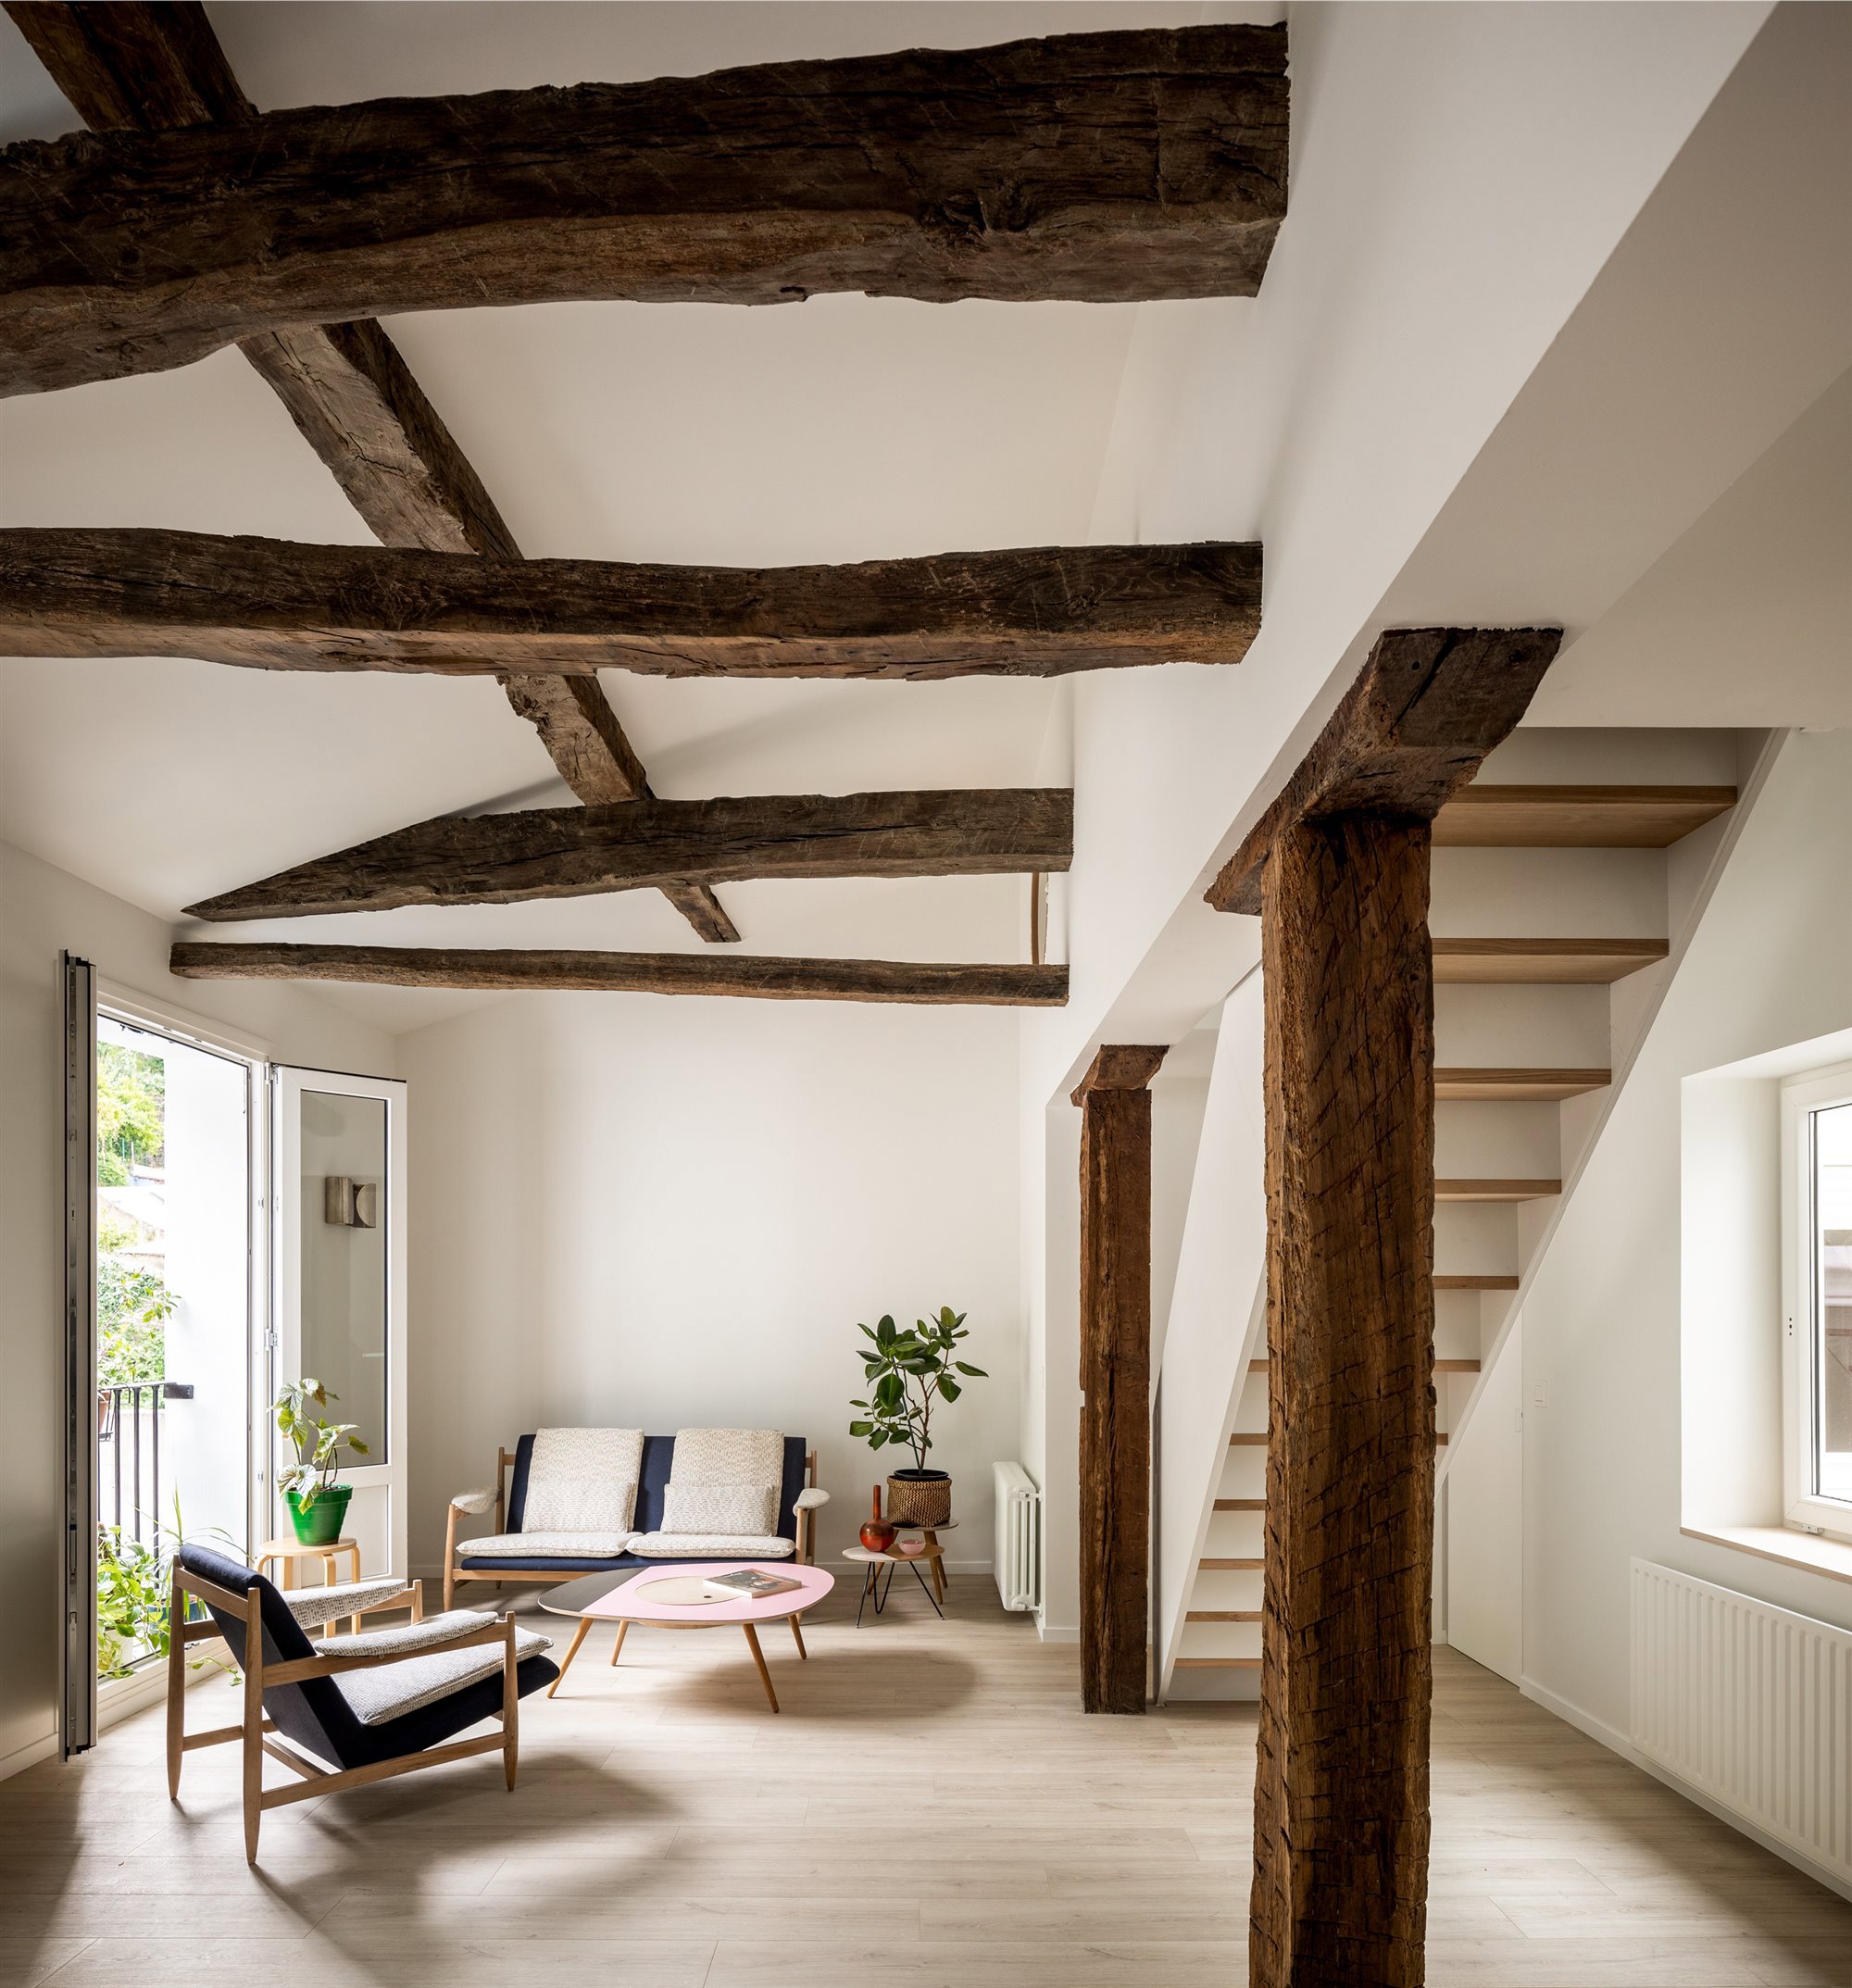 Salón con vigas de madera y estilo minimalista.